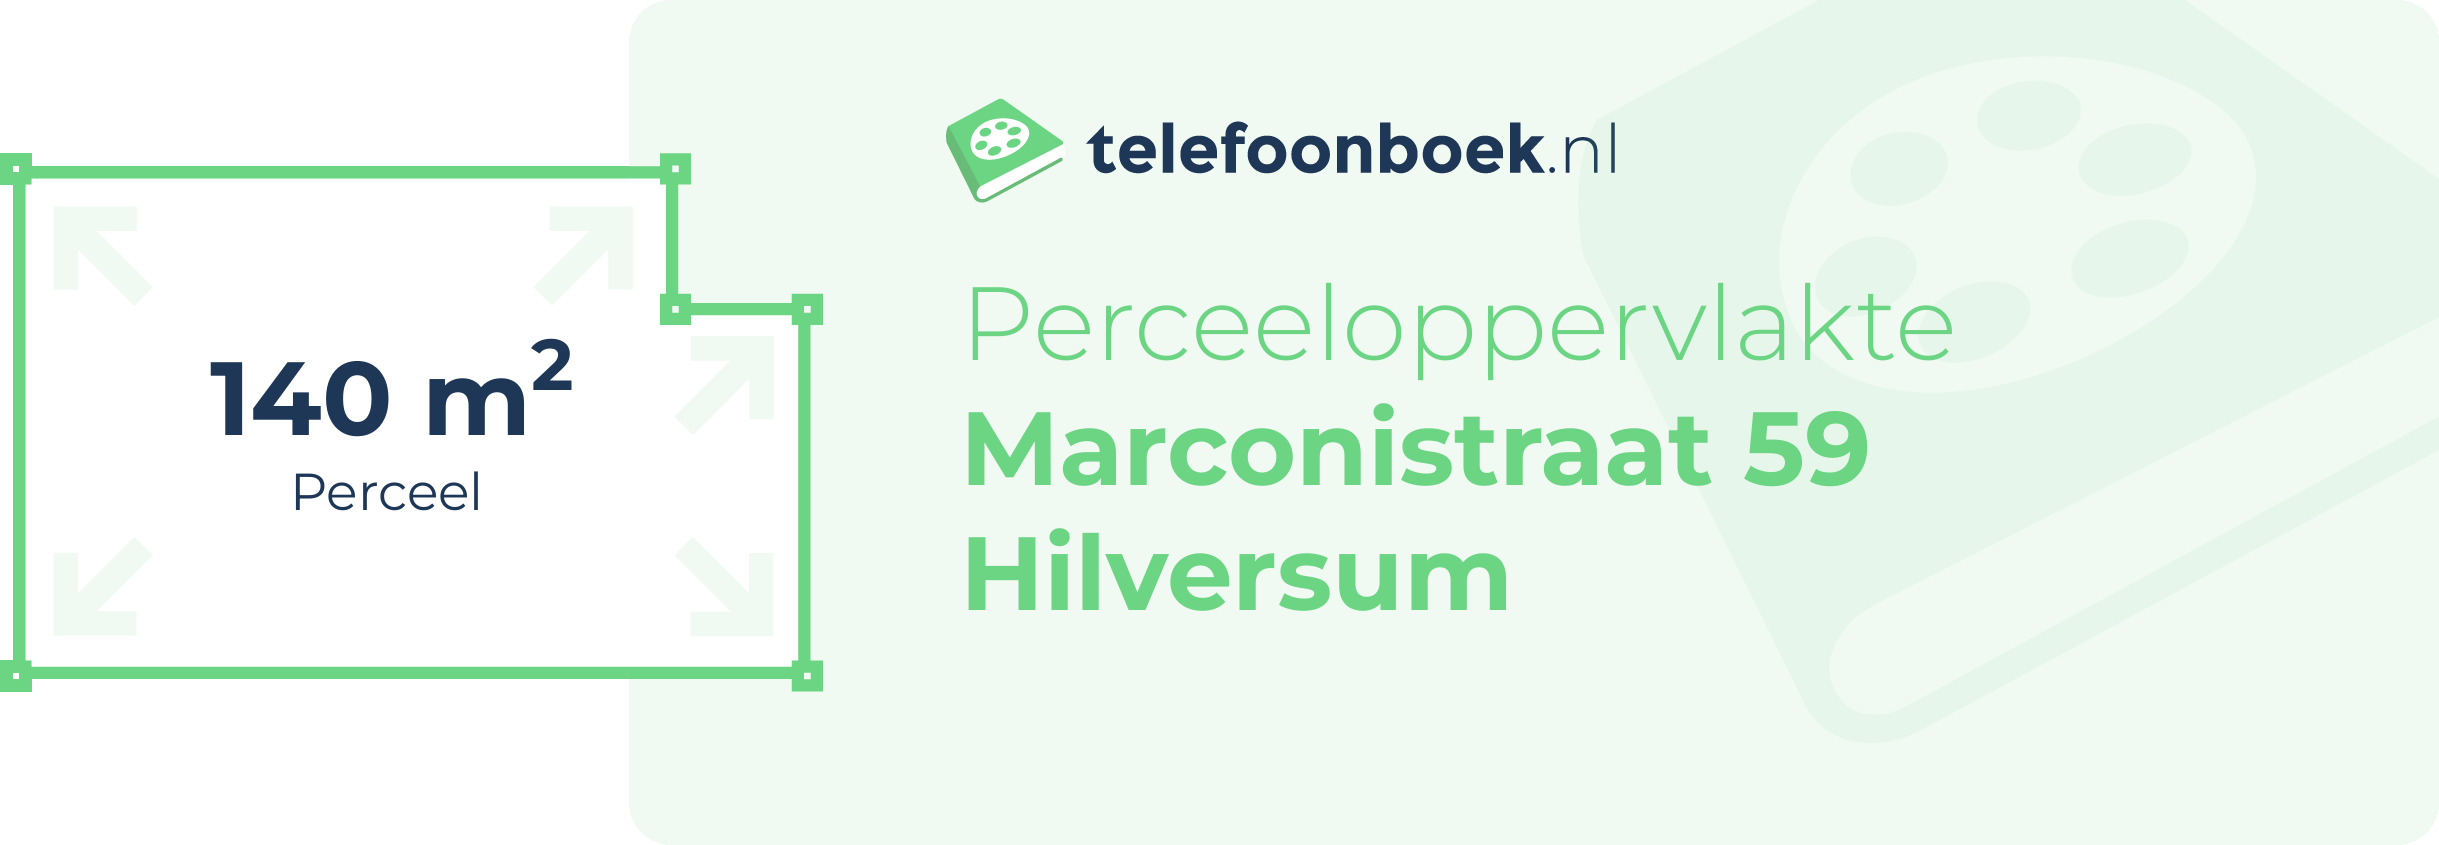 Perceeloppervlakte Marconistraat 59 Hilversum